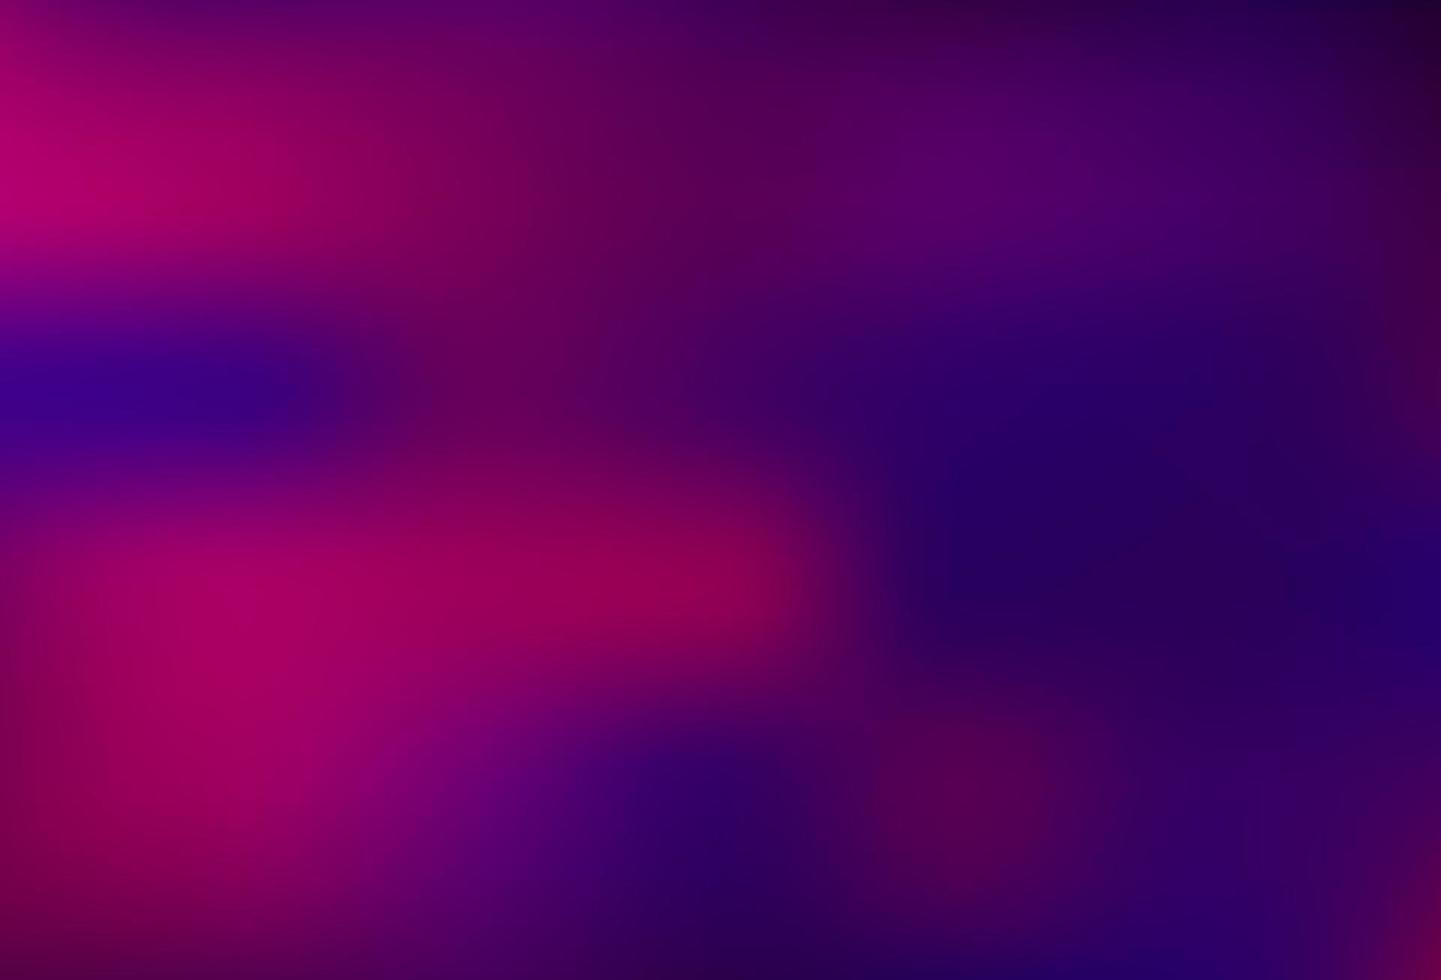 Fondo borroso abstracto del vector púrpura oscuro.